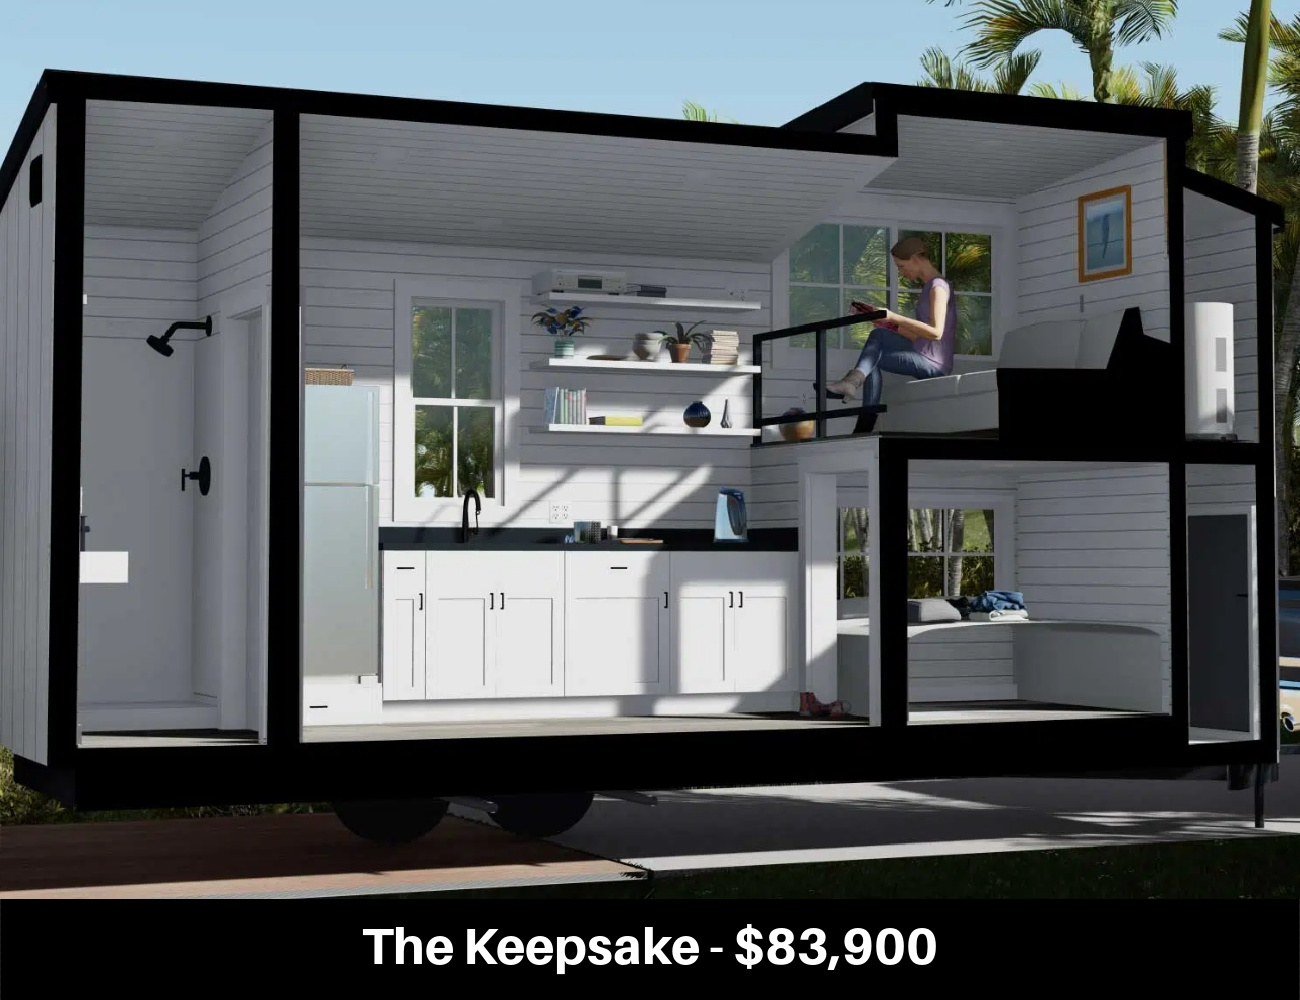 The Keepsake - $83,900